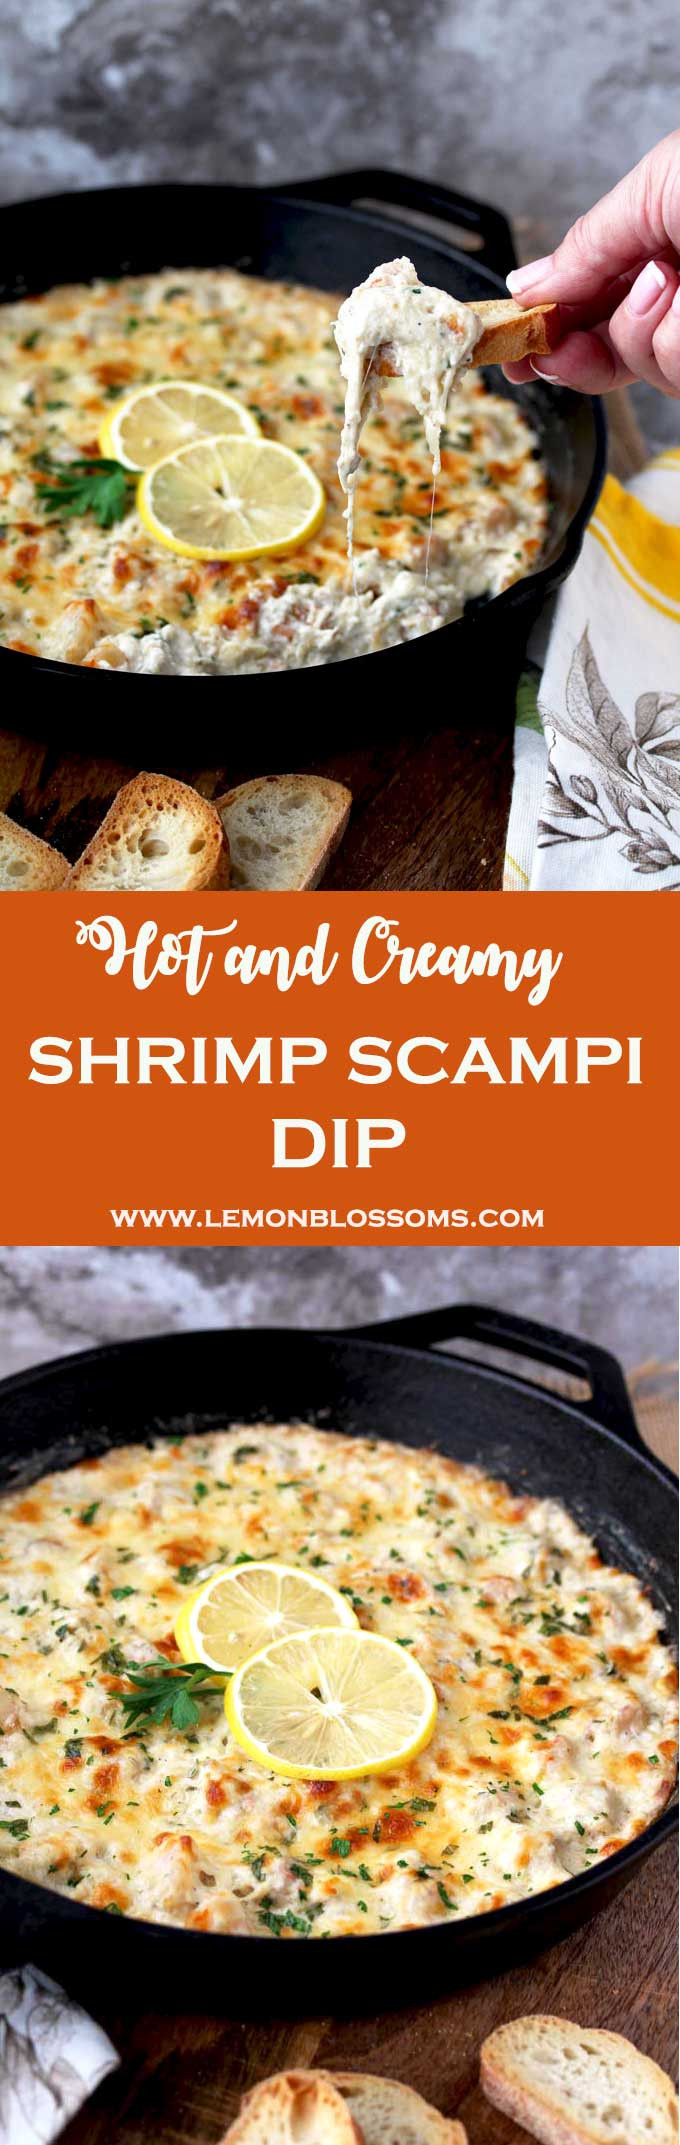 Shrimp Scampi Dip
 Hot and Creamy Shrimp Scampi Dip